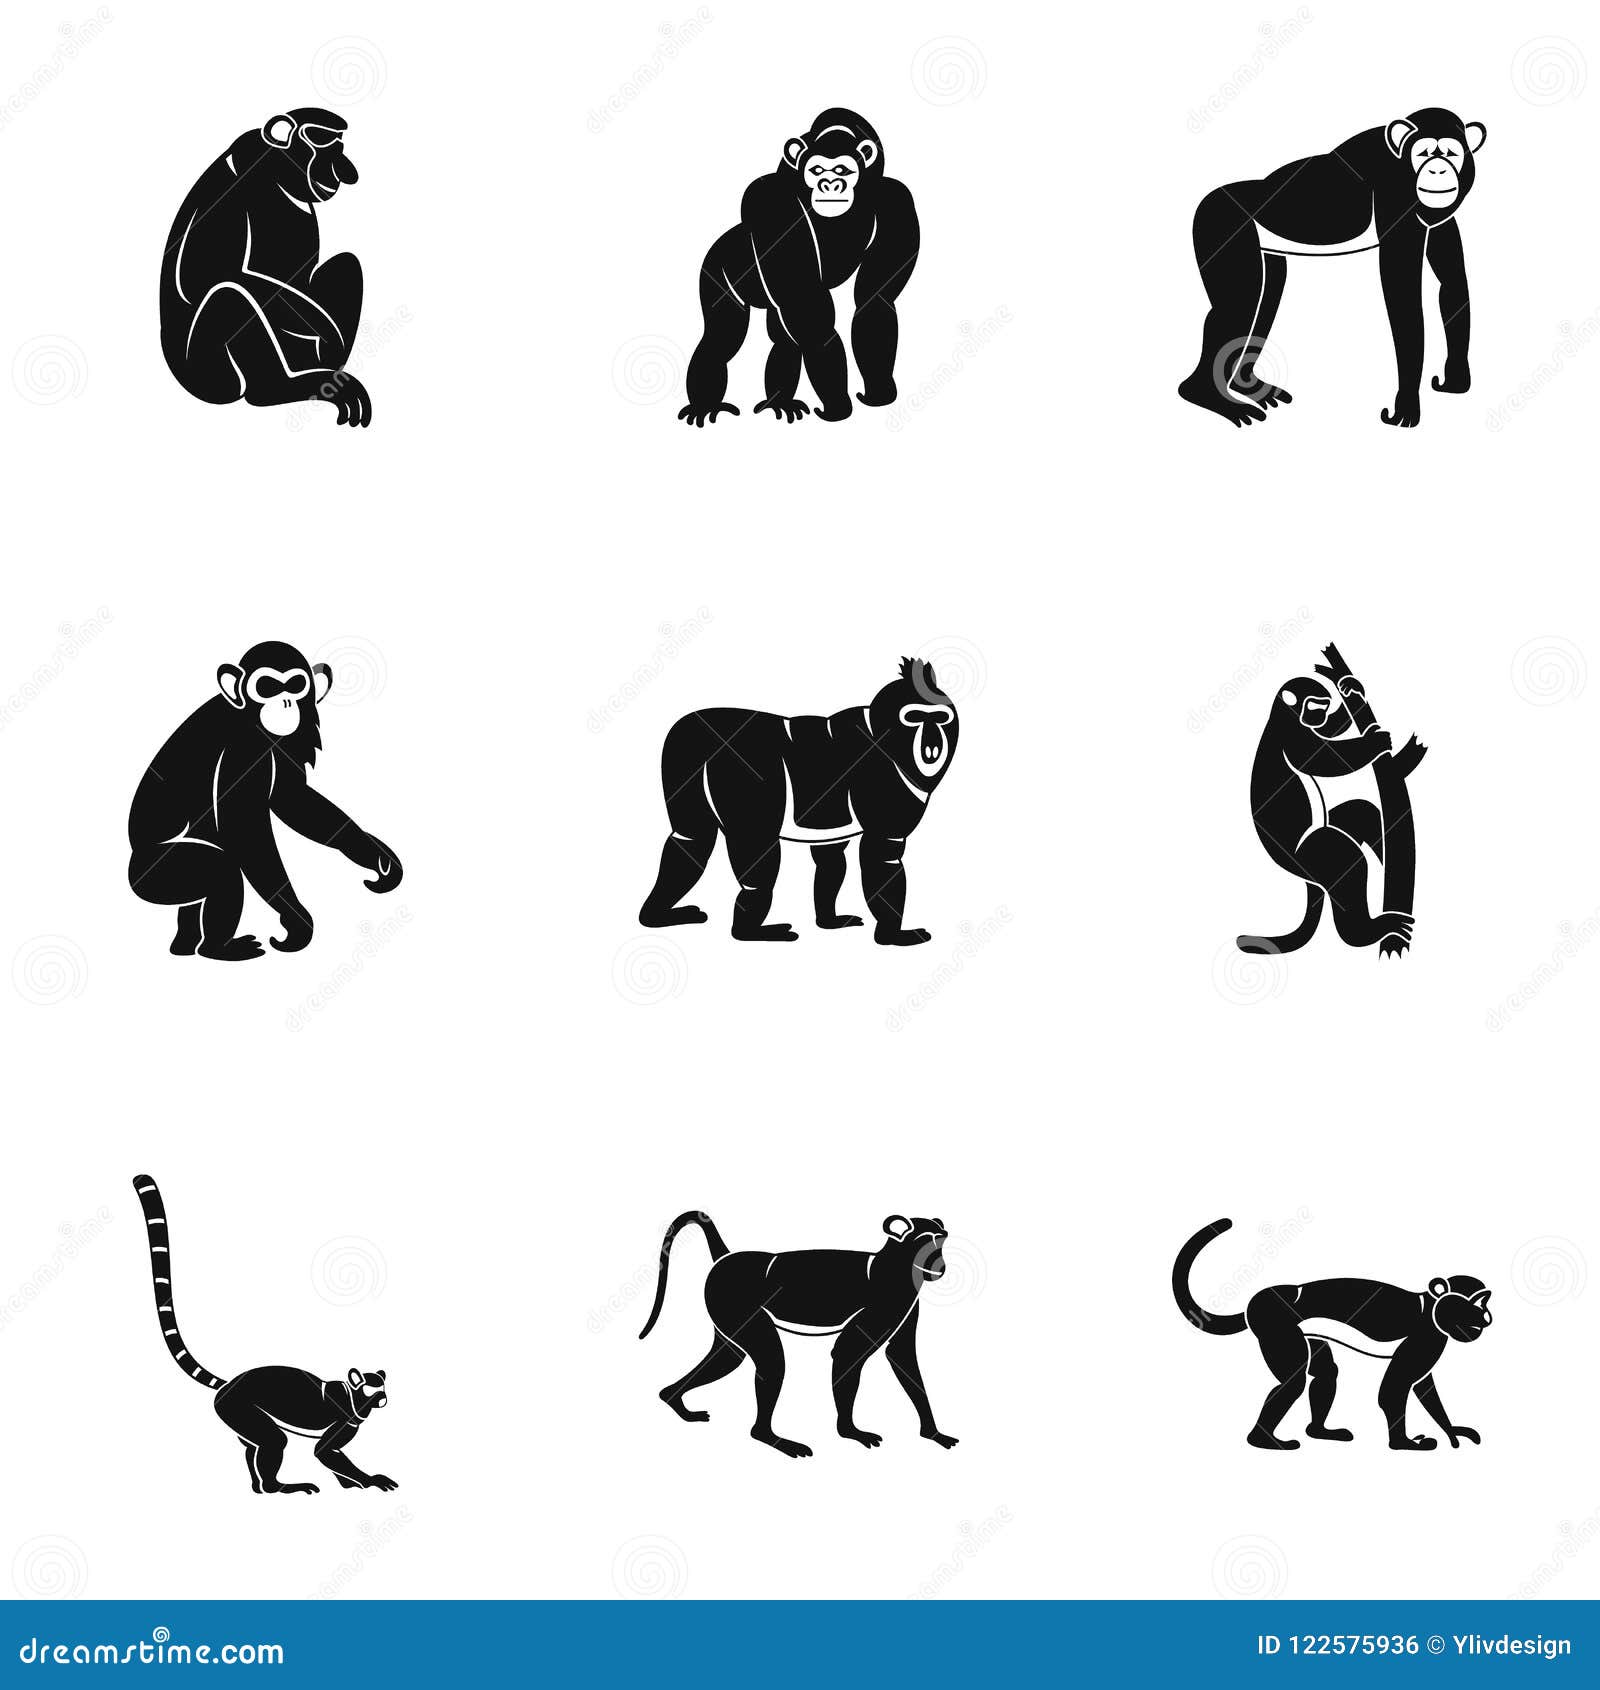 Conjunto De Quatro Macacos Fofos. 2016 Ano Novo Símbolo. Royalty Free SVG,  Cliparts, Vetores, e Ilustrações Stock. Image 47787718